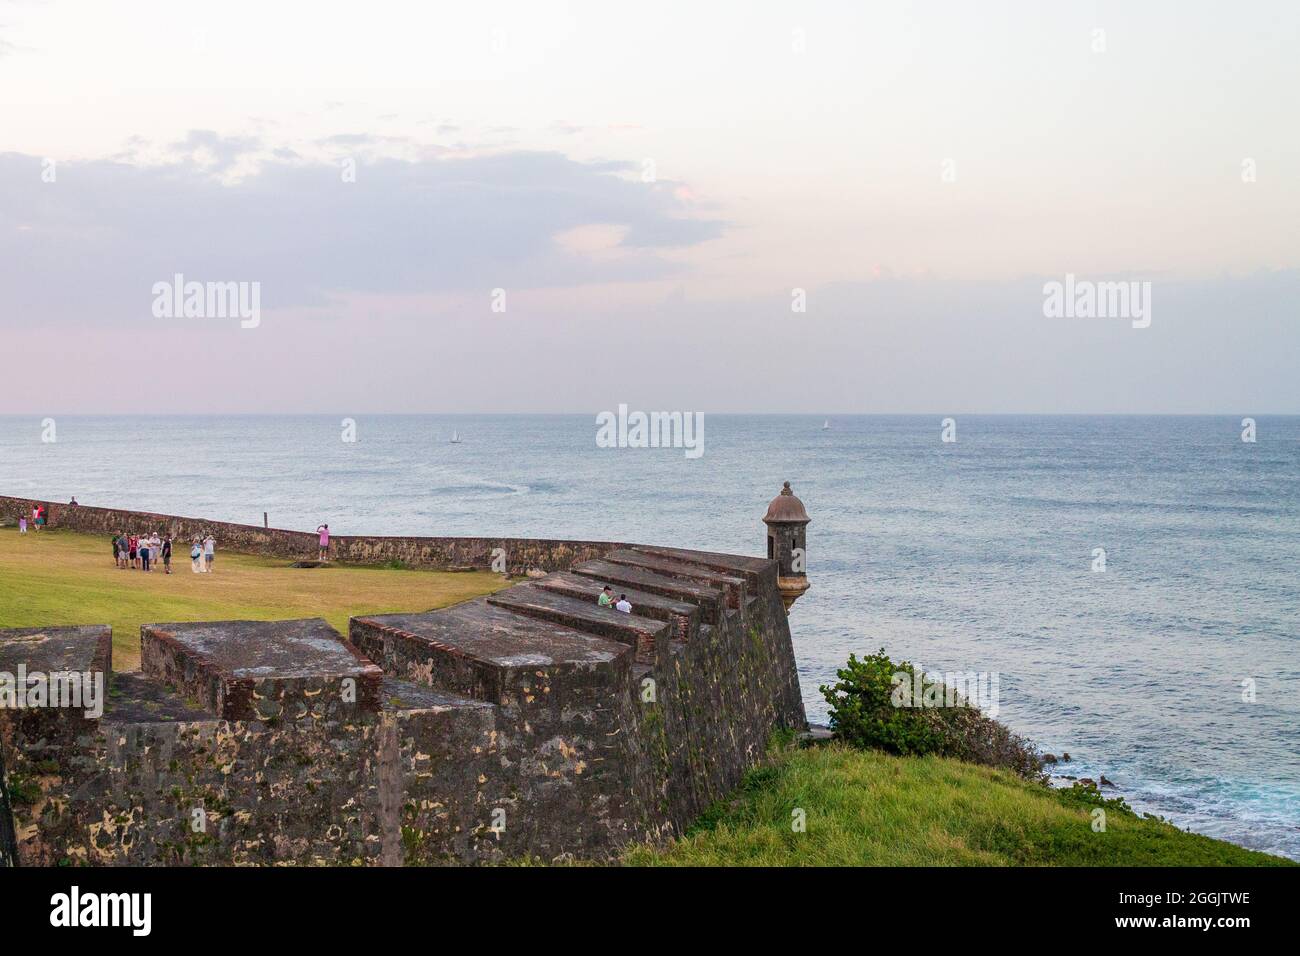 Old San Juan, Puerto Rico - 22. März 2014: Blick auf das Castillo de San Cristobal in Old San Juan, Puerto Rico Stockfoto